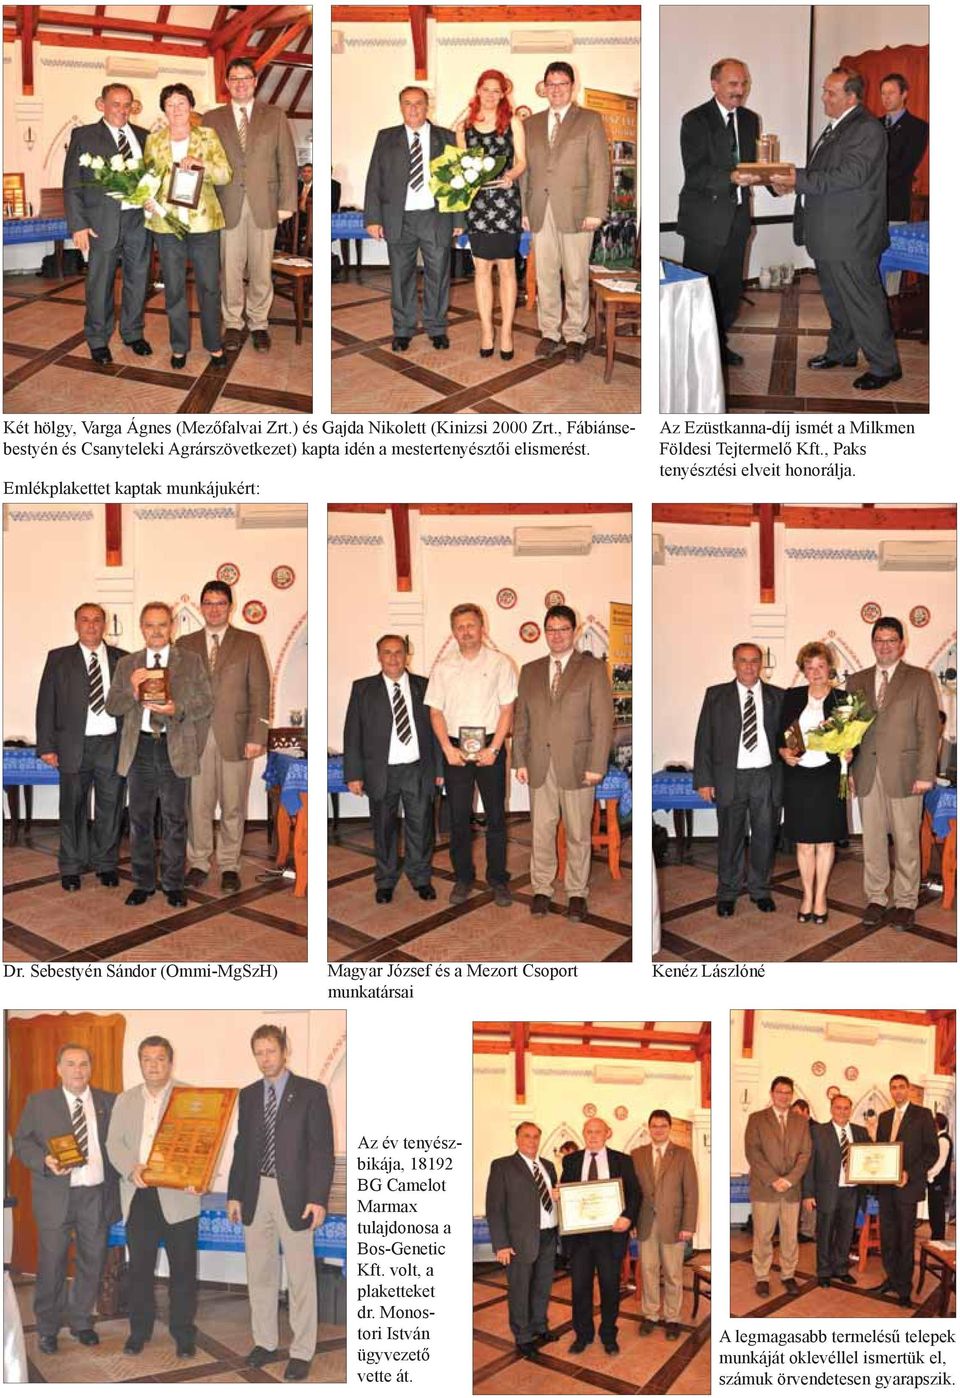 Emlékplakettet kaptak munkájukért: Az Ezüstkanna-díj ismét a Milkmen Földesi Tejtermelő Kft., Paks tenyésztési elveit honorálja. Dr.